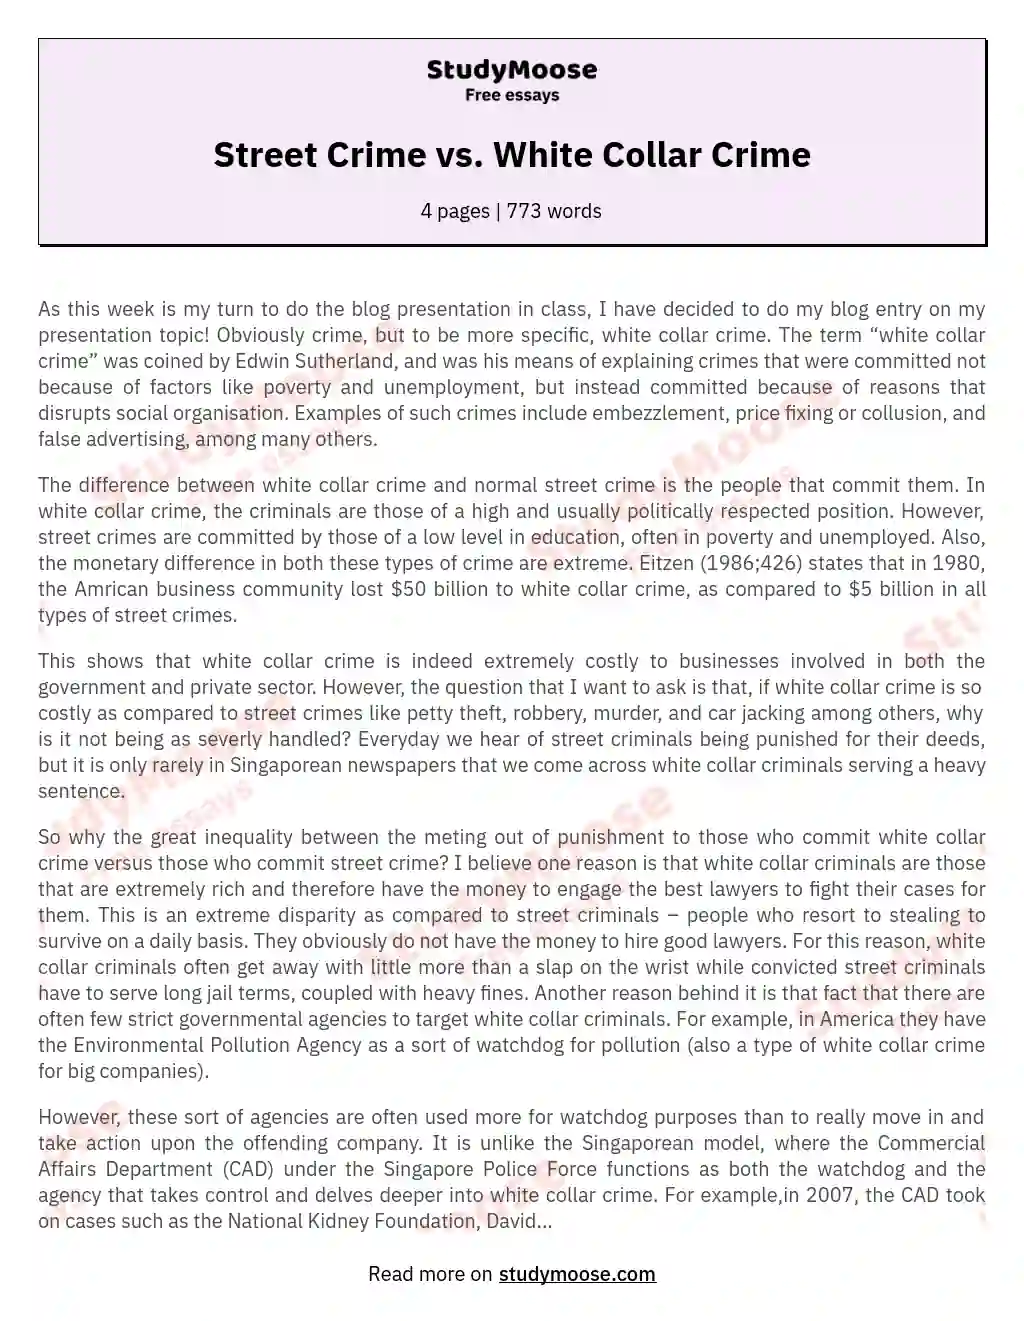 Street Crime vs. White Collar Crime essay